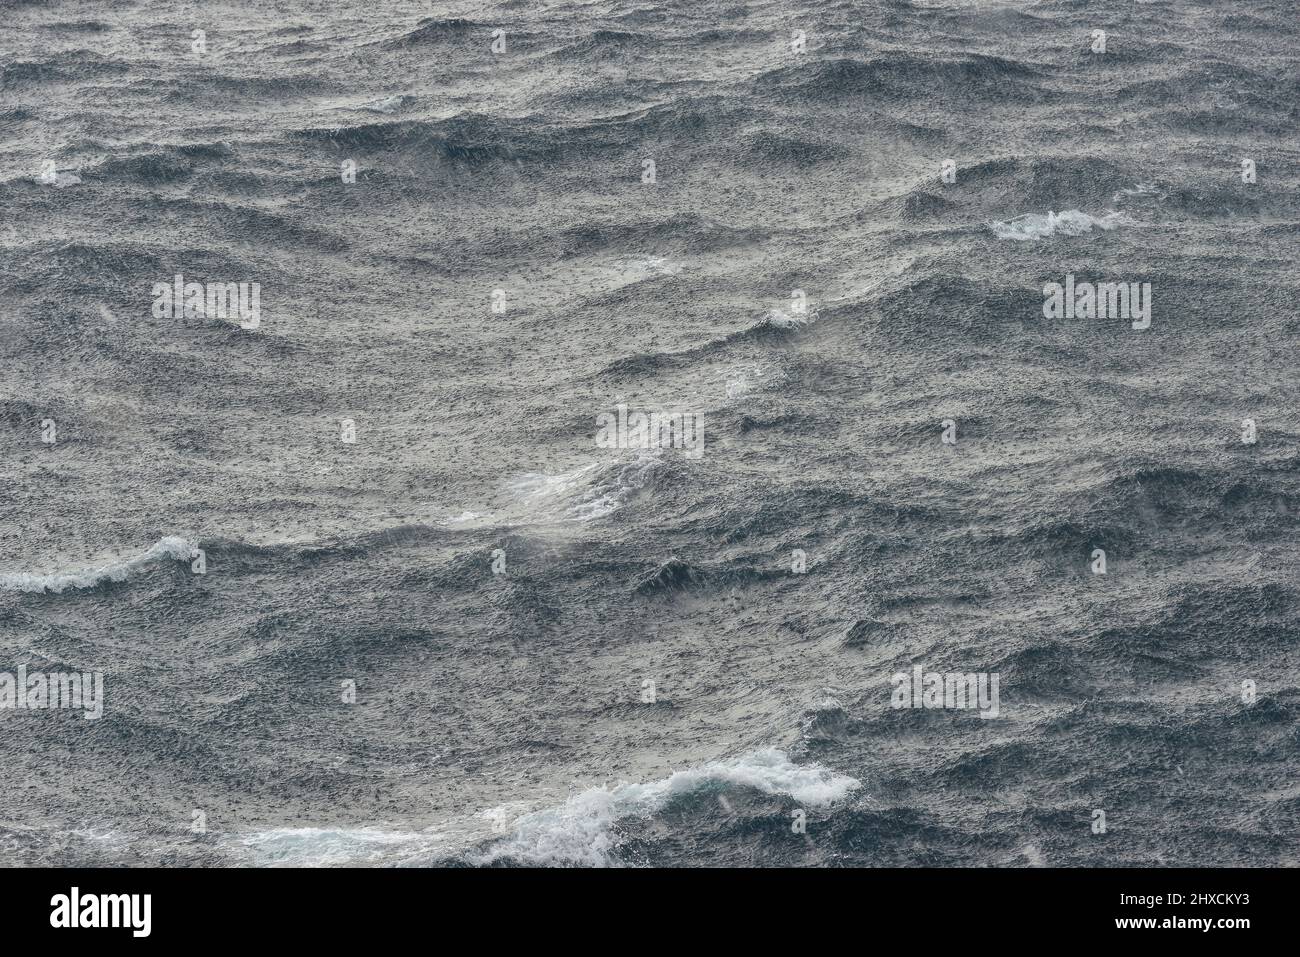 Forte pioggia sulle alte onde in mare, Catalogna, Spagna Foto Stock